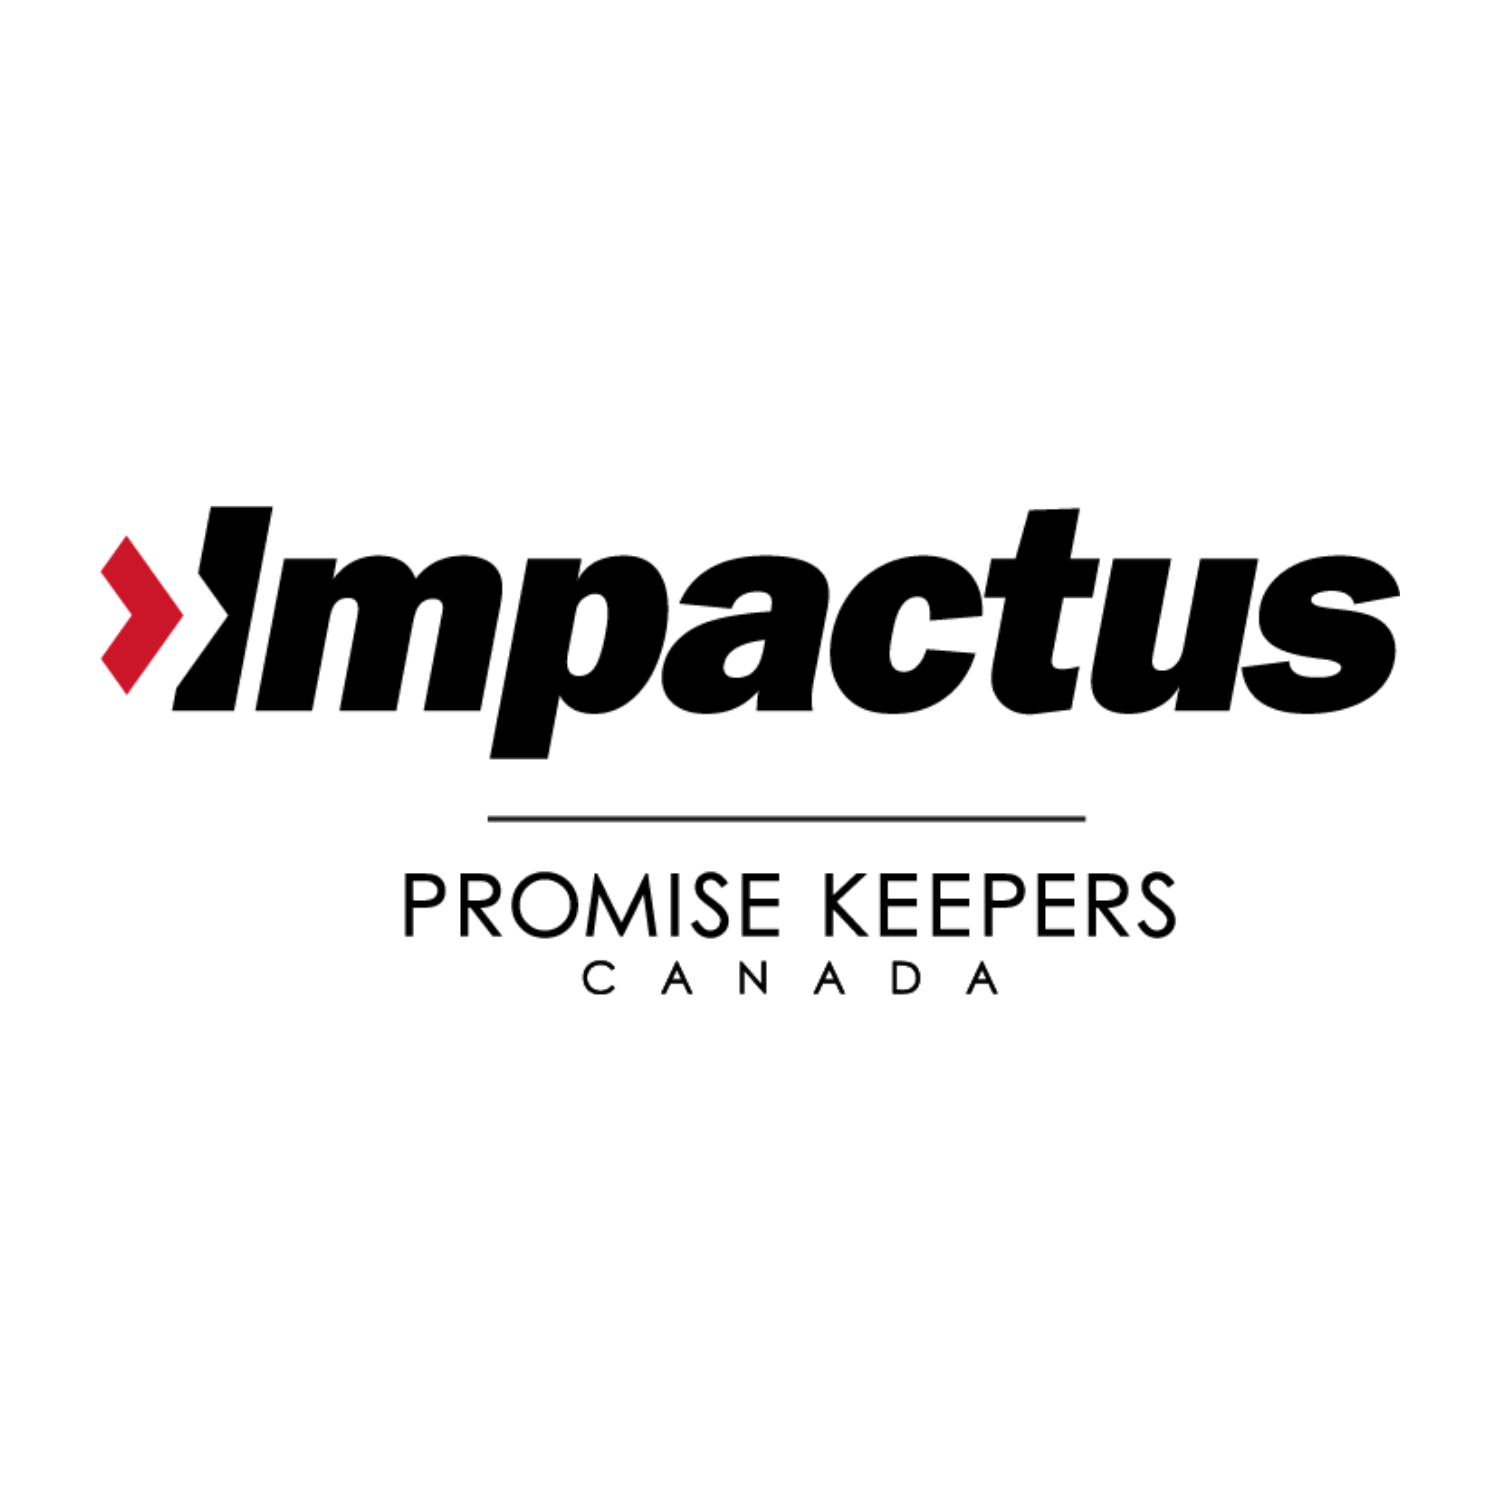 (c) Impactus.org